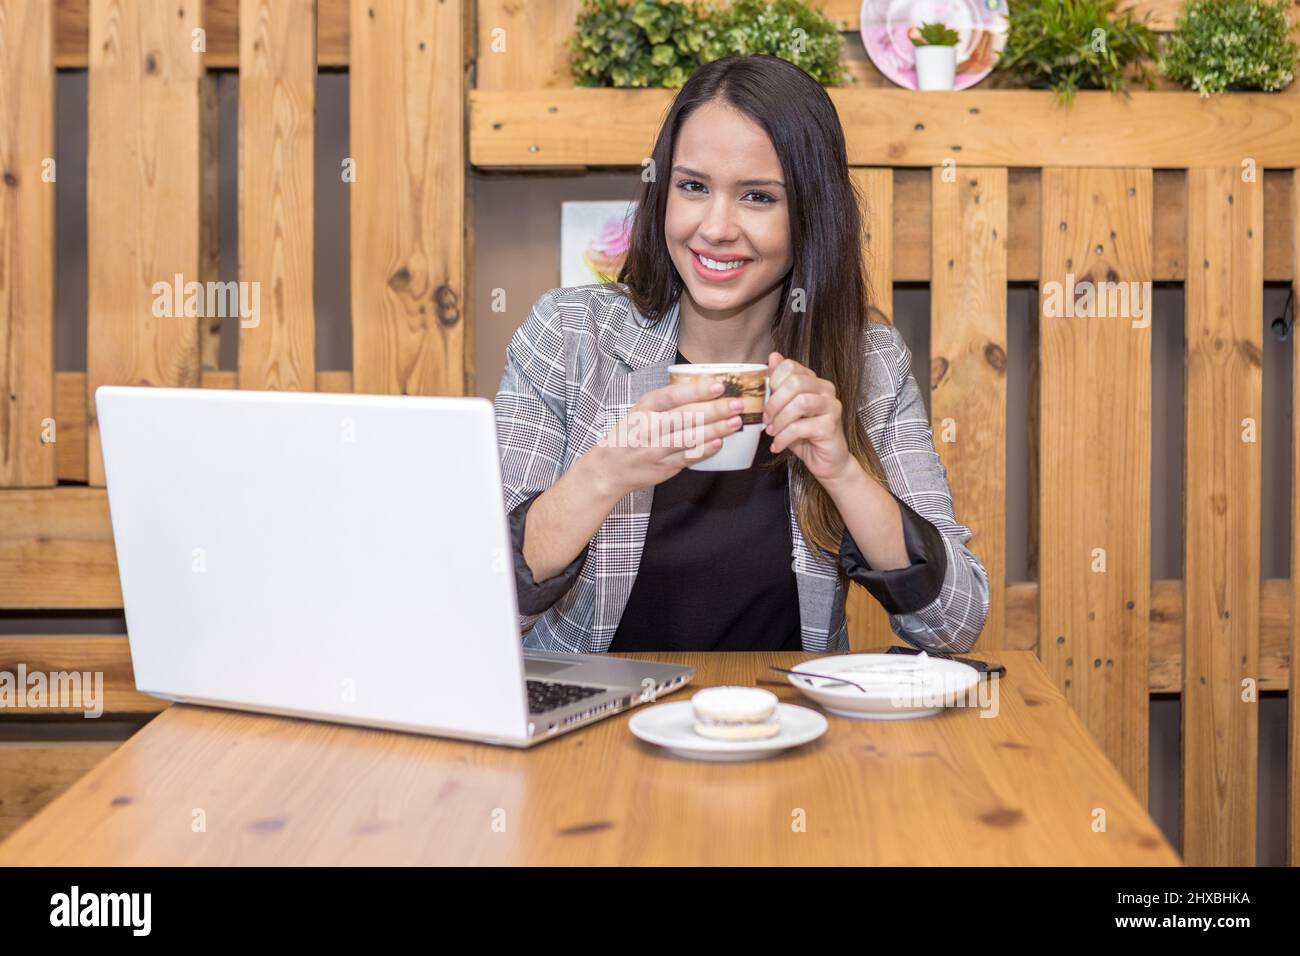 Femme indépendante et optimiste, blouson à carreaux, buvant un café chaud tout en étant assise à table avec un netbook et un macaron sur l'assiette et en regardant l'appareil photo Banque D'Images